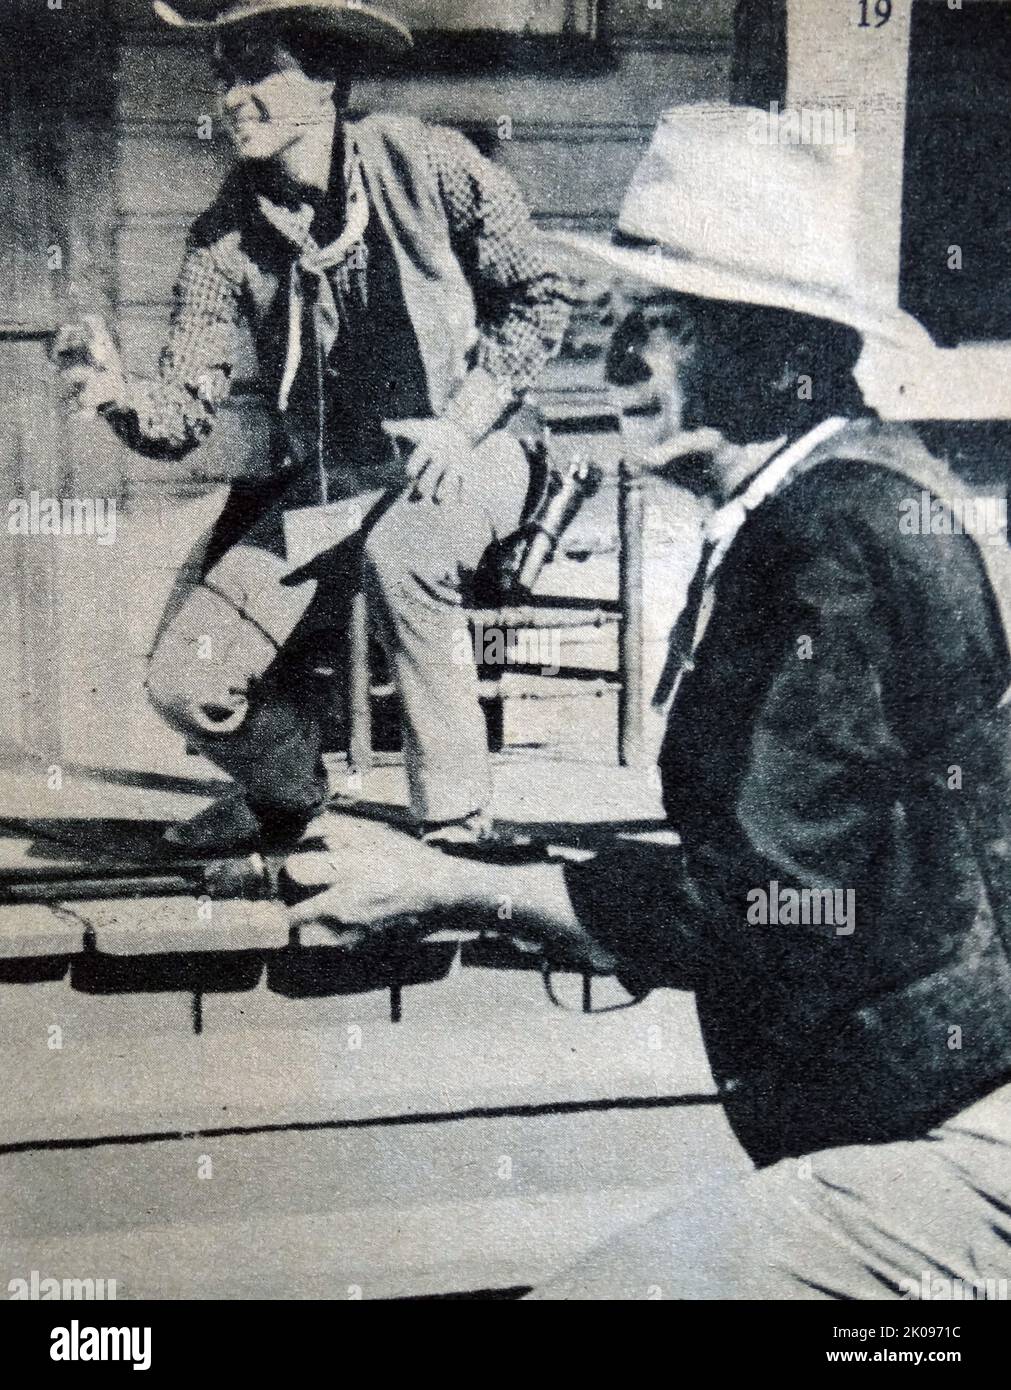 Ricky Nelson et John Wayne. Eric Hilliard Nelson (8 mai 1940 - 31 décembre 1985), connu professionnellement sous le nom de Ricky Nelson, était un chanteur, un pionnier de la pop, un musicien et un acteur américain. Marion Robert Morrison (26 mai 1907 - 11 juin 1979), connue professionnellement sous le nom de John Wayne et surnommée Duke, était un acteur et un cinéaste américain qui est devenu une icône populaire grâce à ses rôles dans les films réalisés pendant l'âge d'or d'Hollywood, en particulier dans les films occidentaux et de guerre. Banque D'Images